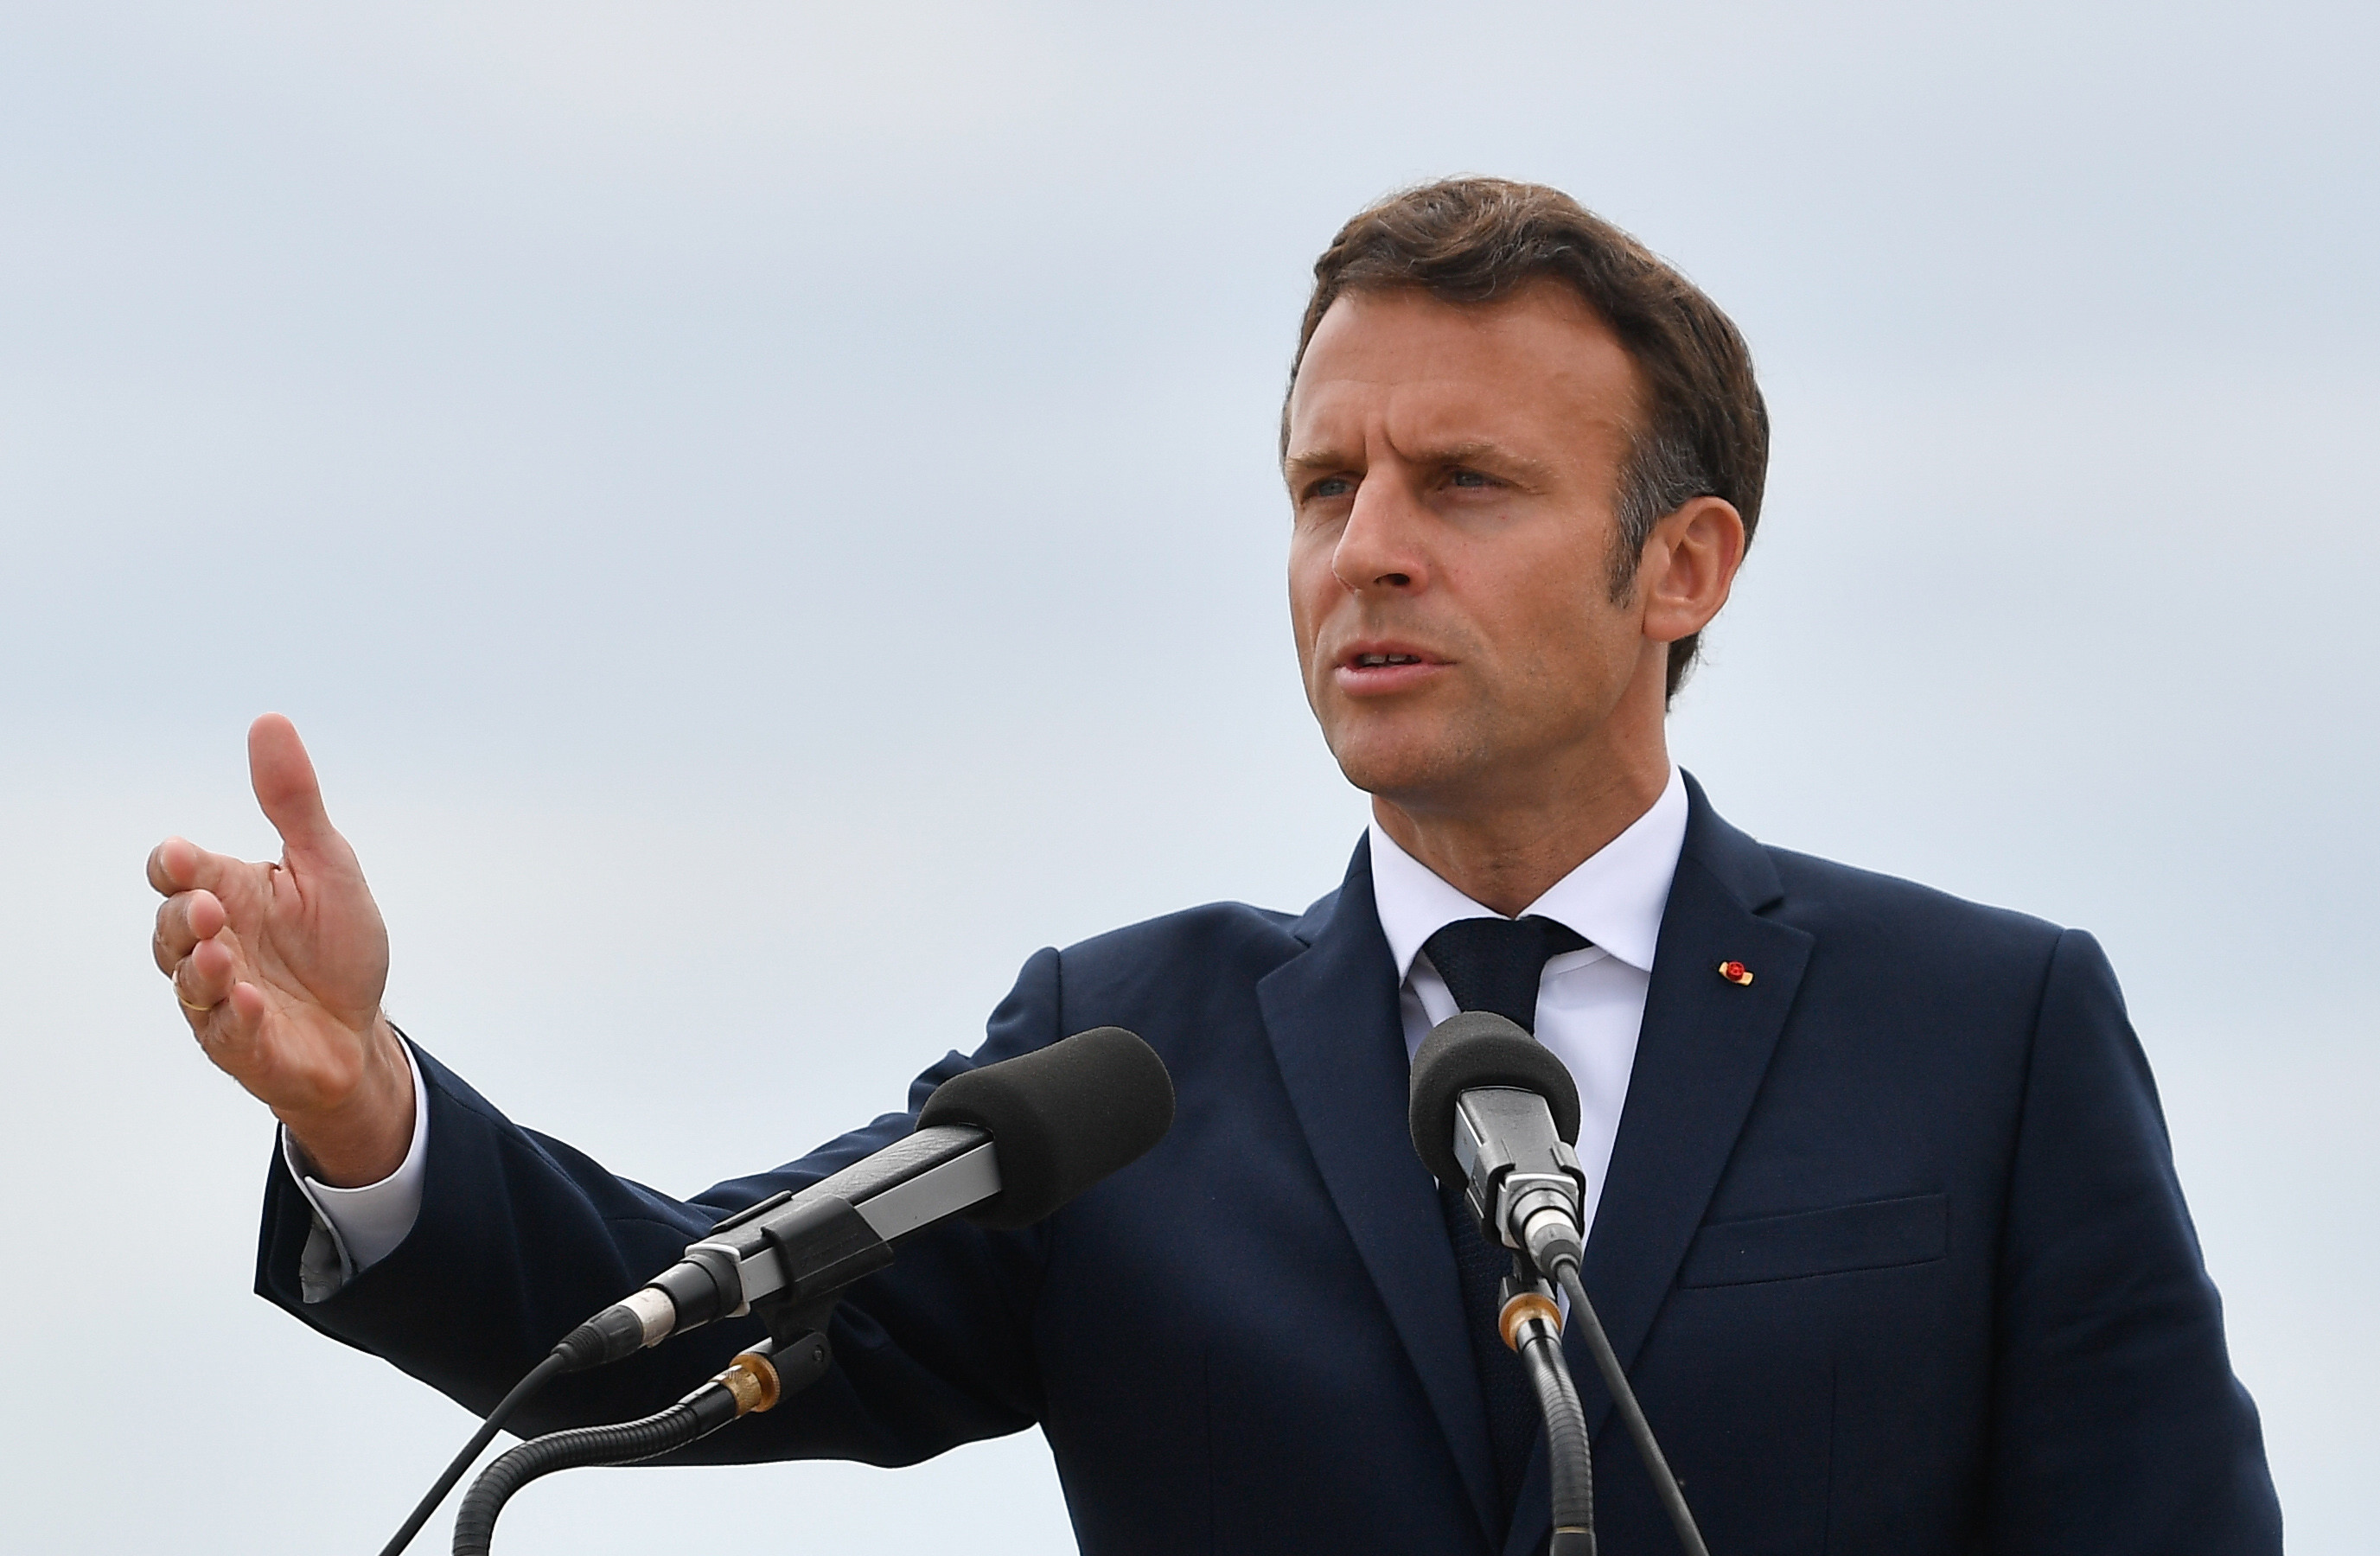 Mesajul transmis de Macron, în limba română: ”Era important pentru mine să vin”